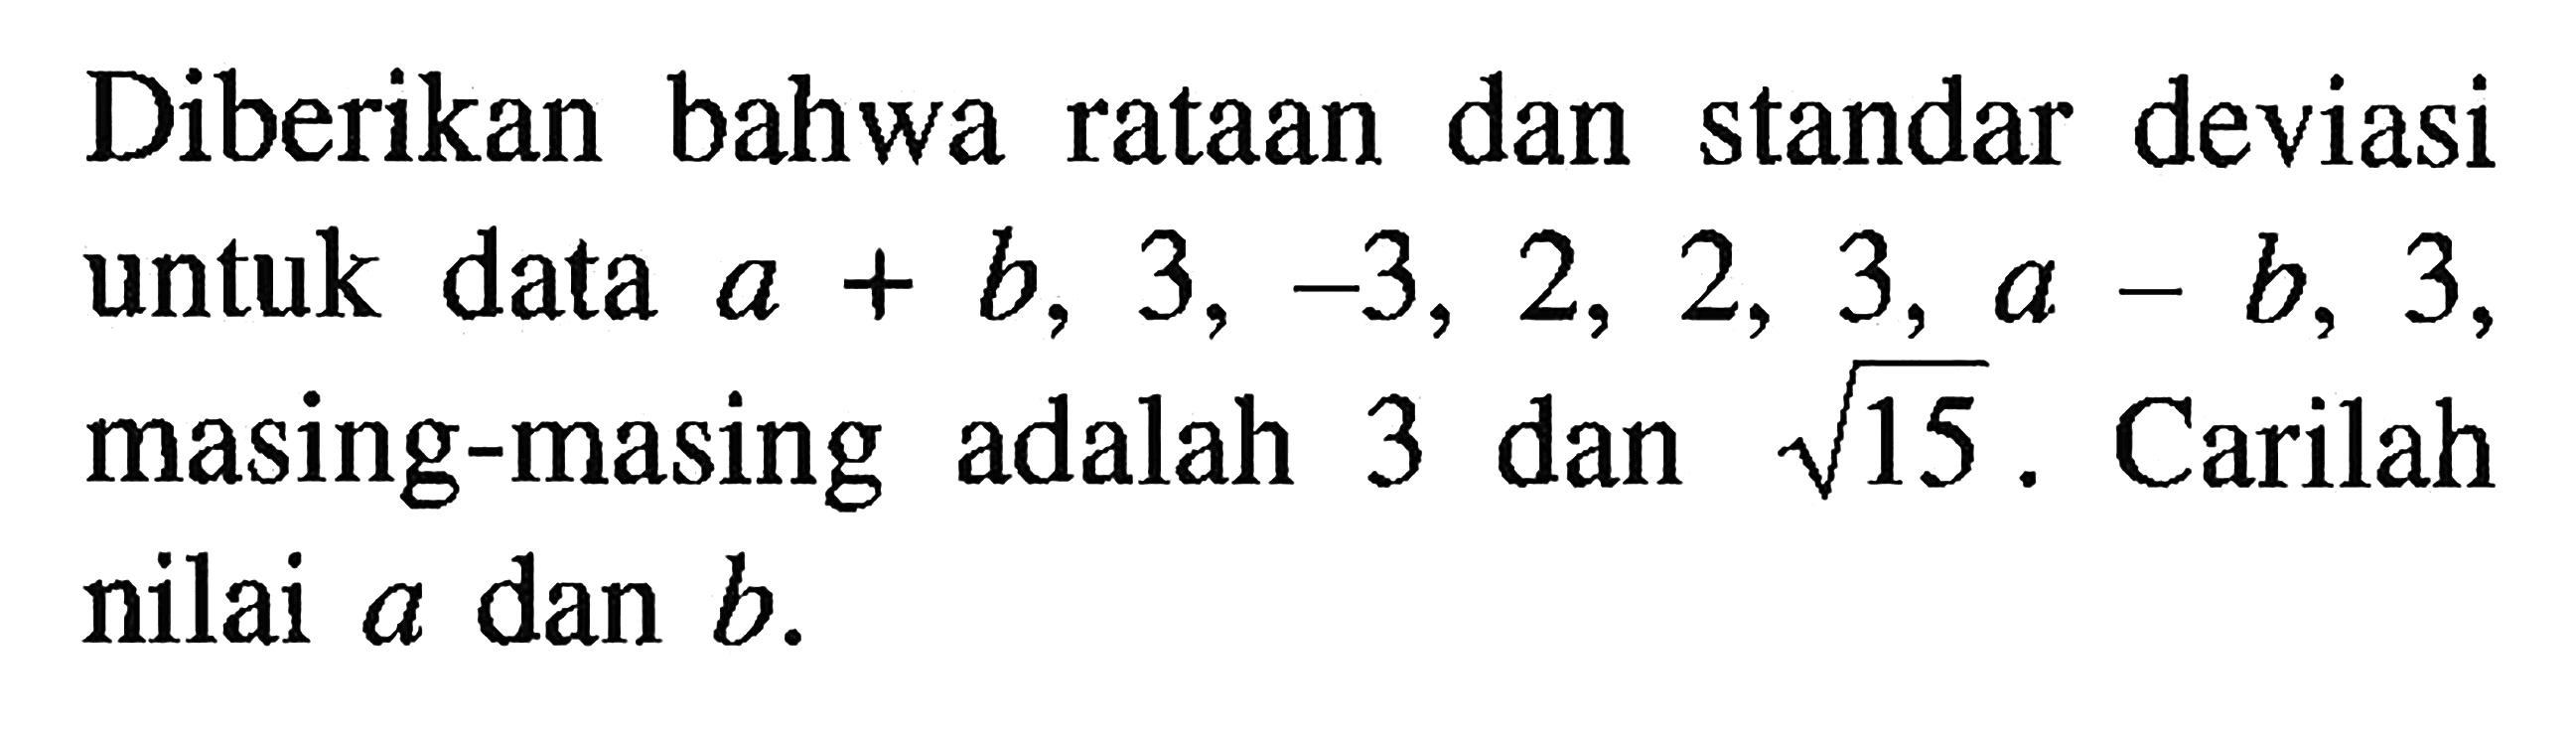 Diberikan bahwa rataan dan standar deviasi untuk data a+b, 3, -3, 2, 2, 3, a-b, 3, masing-masing adalah 3 dan akar(15). Carilah nilai a dan b.